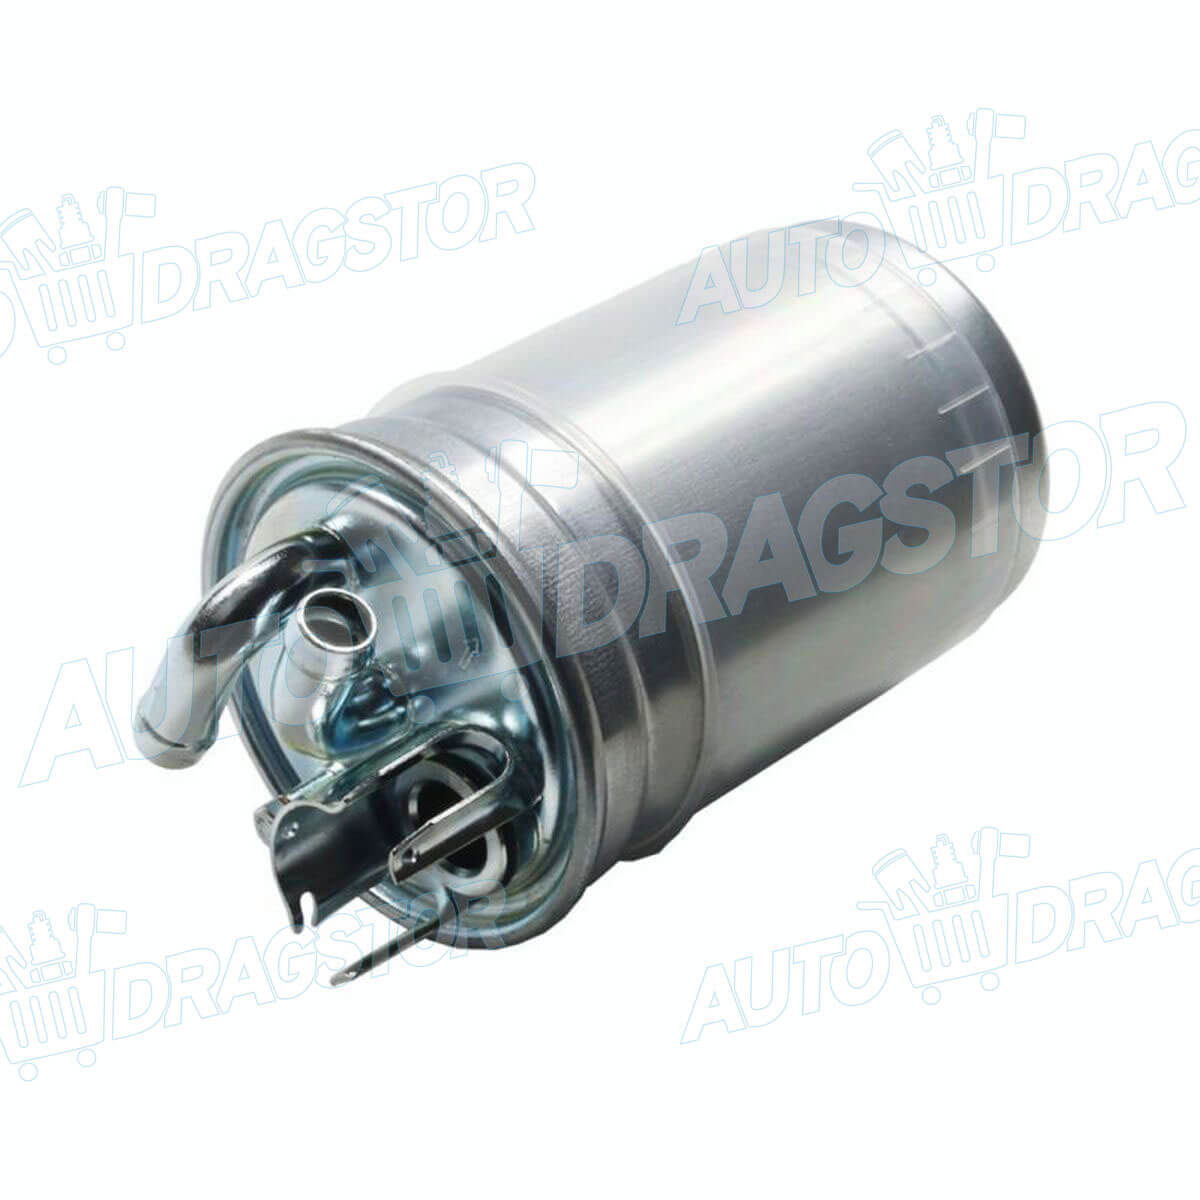 Filter goriva AUDI A2 (8Z), 00-05; 